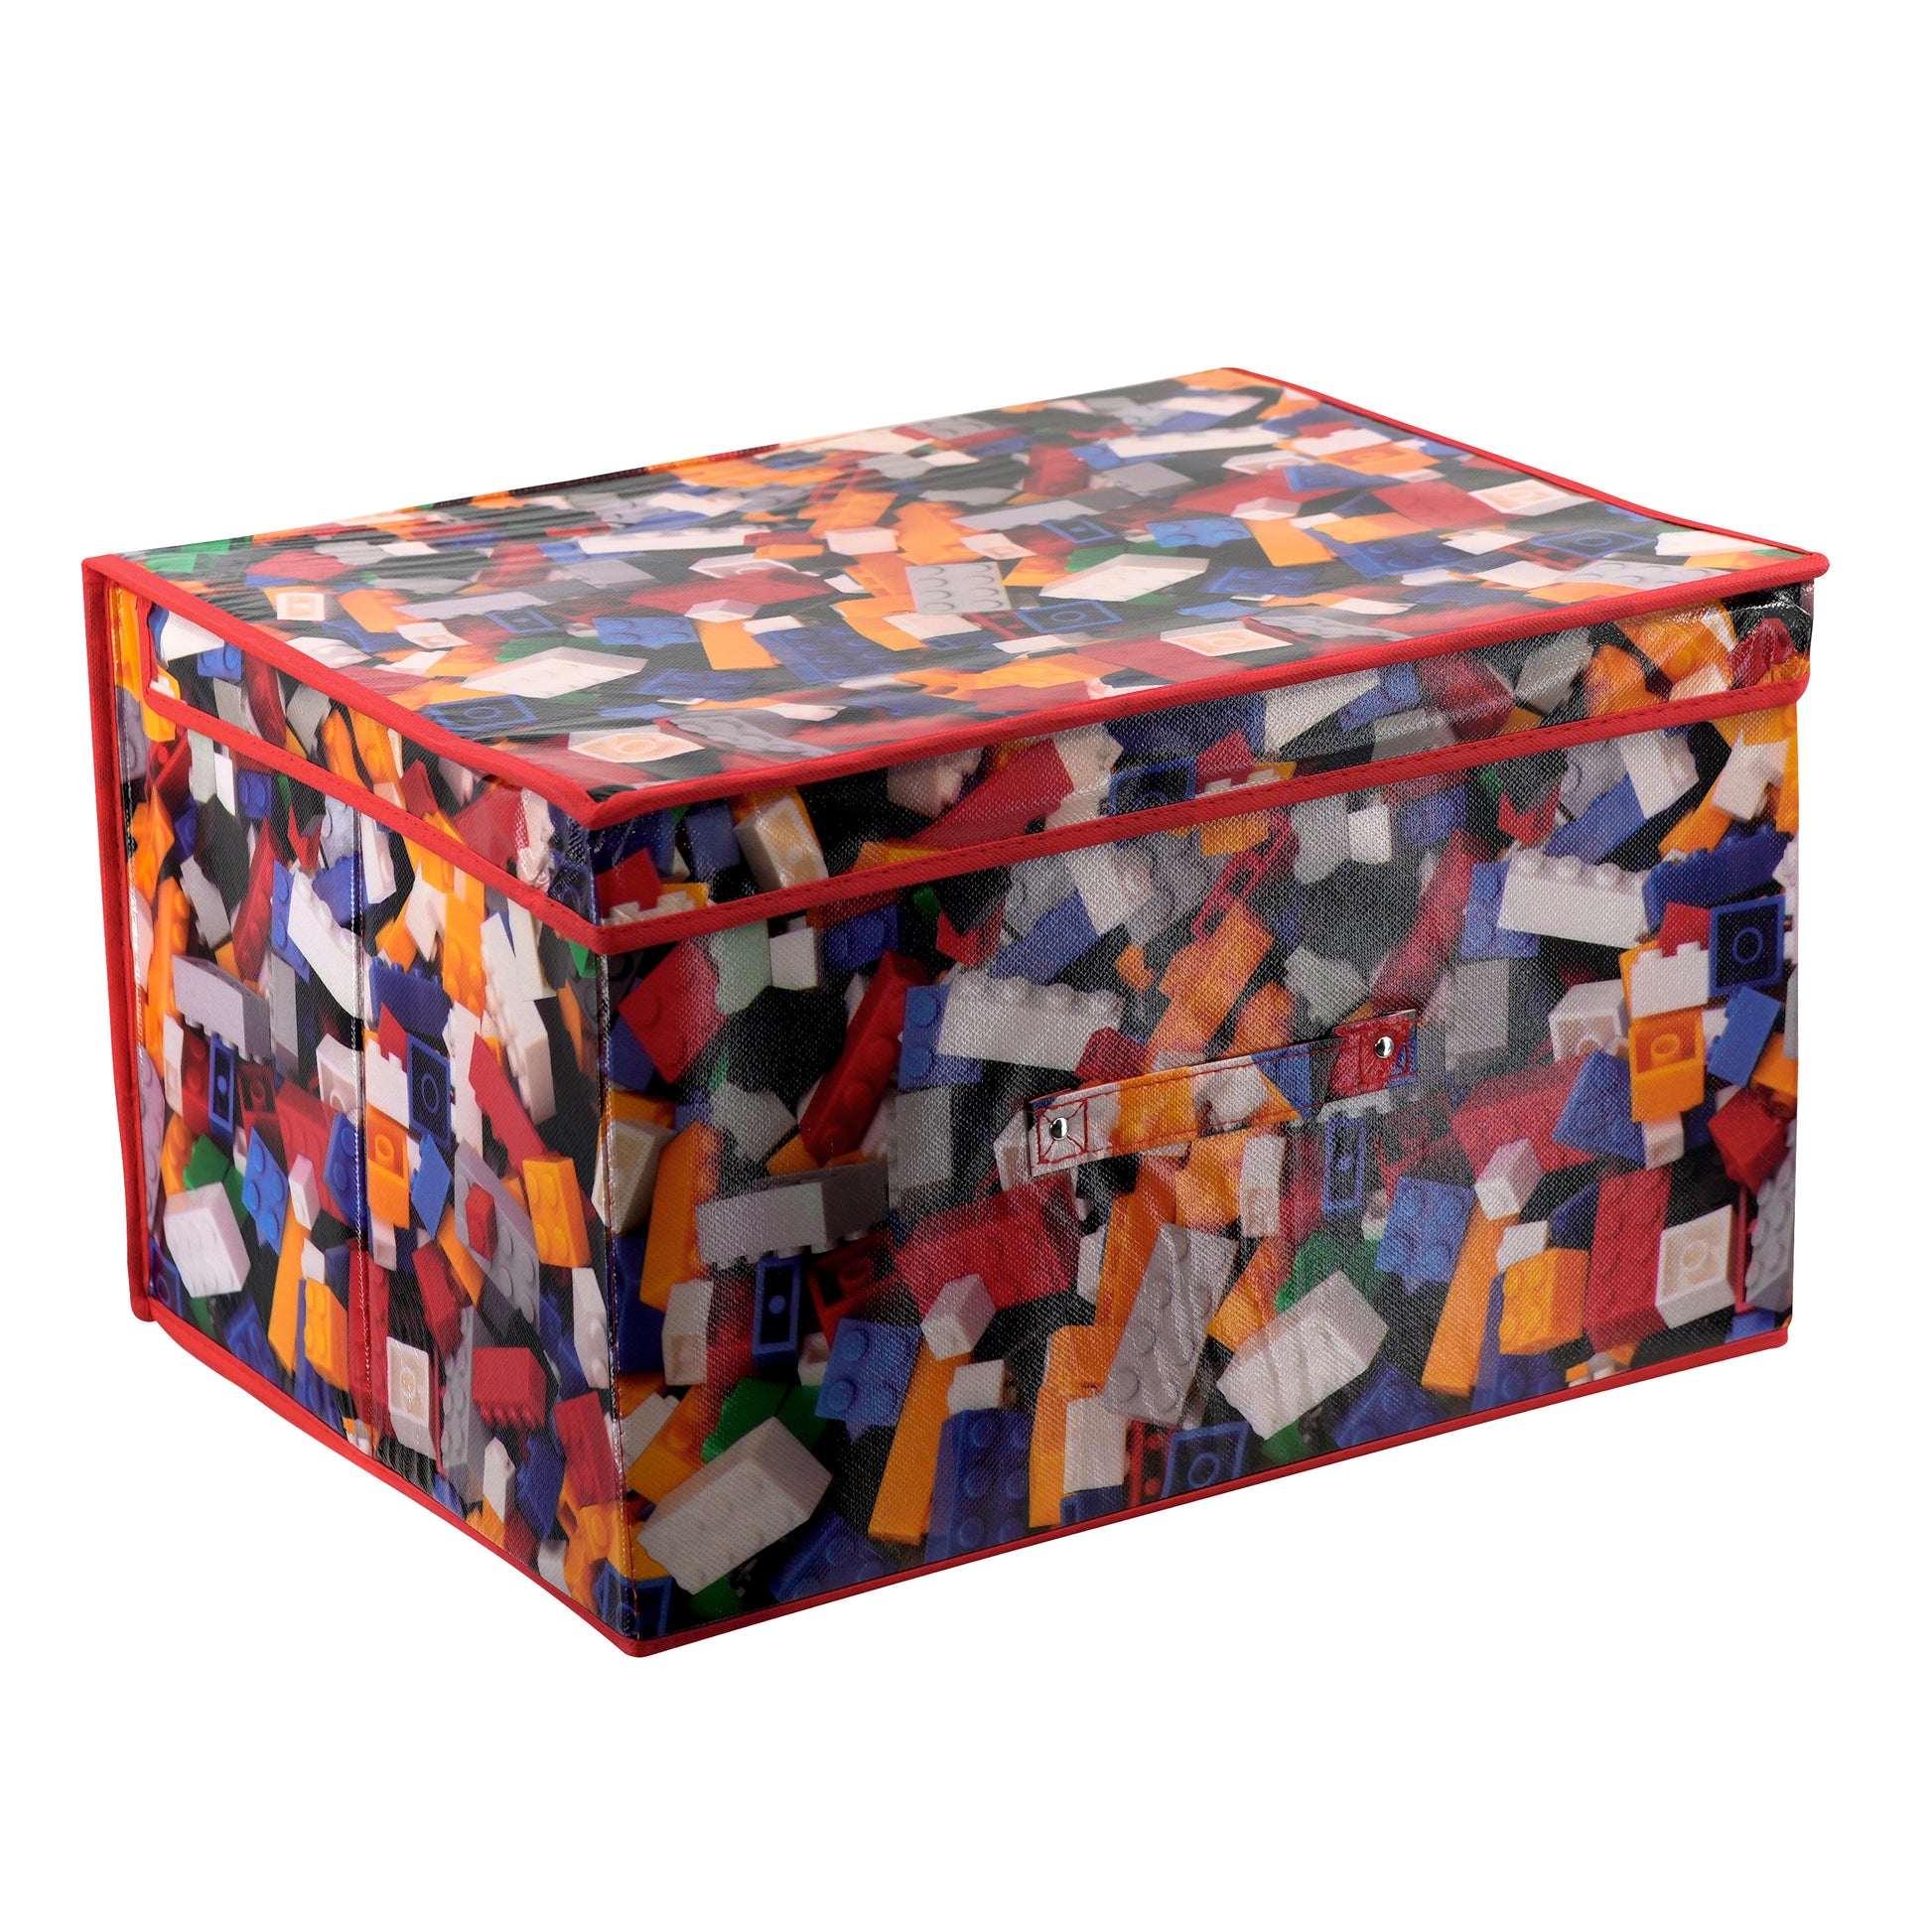 Bricks Large Storage Box by The Magic Toy Shop - UKBuyZone